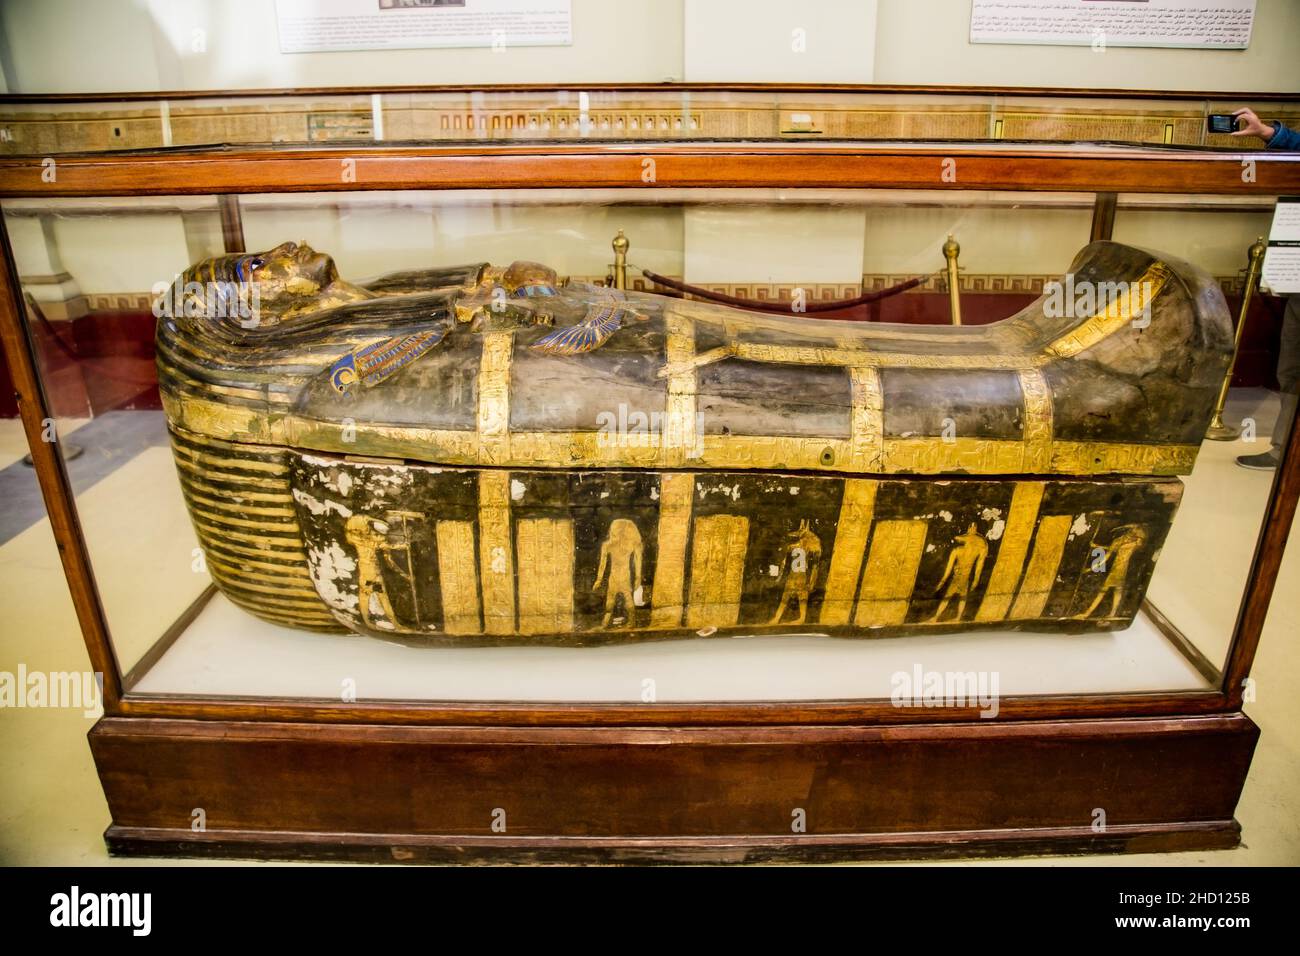 Kairo, Ägypten - 31. Jan 2020: Innenraum des Museums für Ägyptische Antiquitäten (Ägyptisches Museum), das die weltweit größte Sammlung von antiken Gebäuden beherbergt Stockfoto